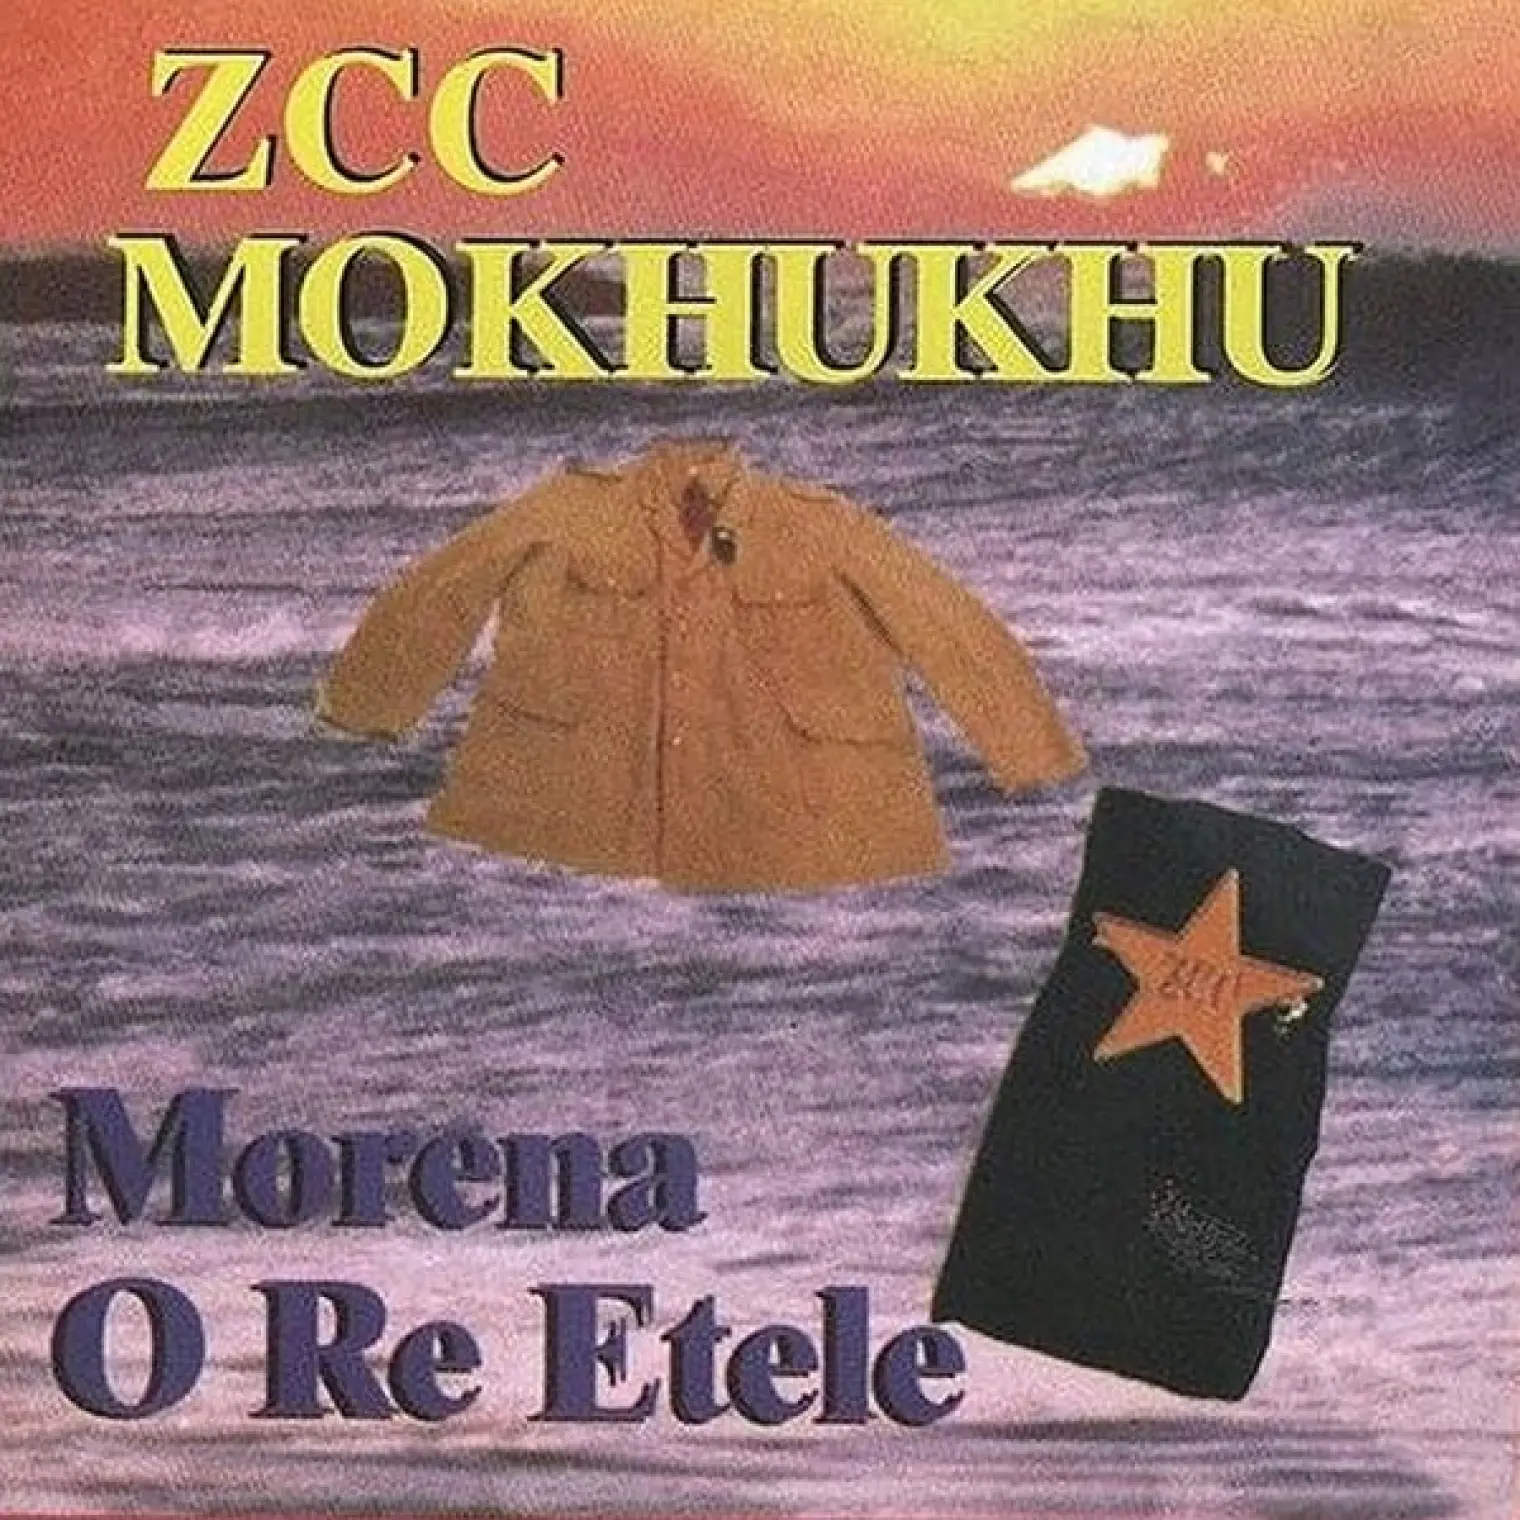 Morena O Re Etele -  Z.C.C. Mukhukhu 